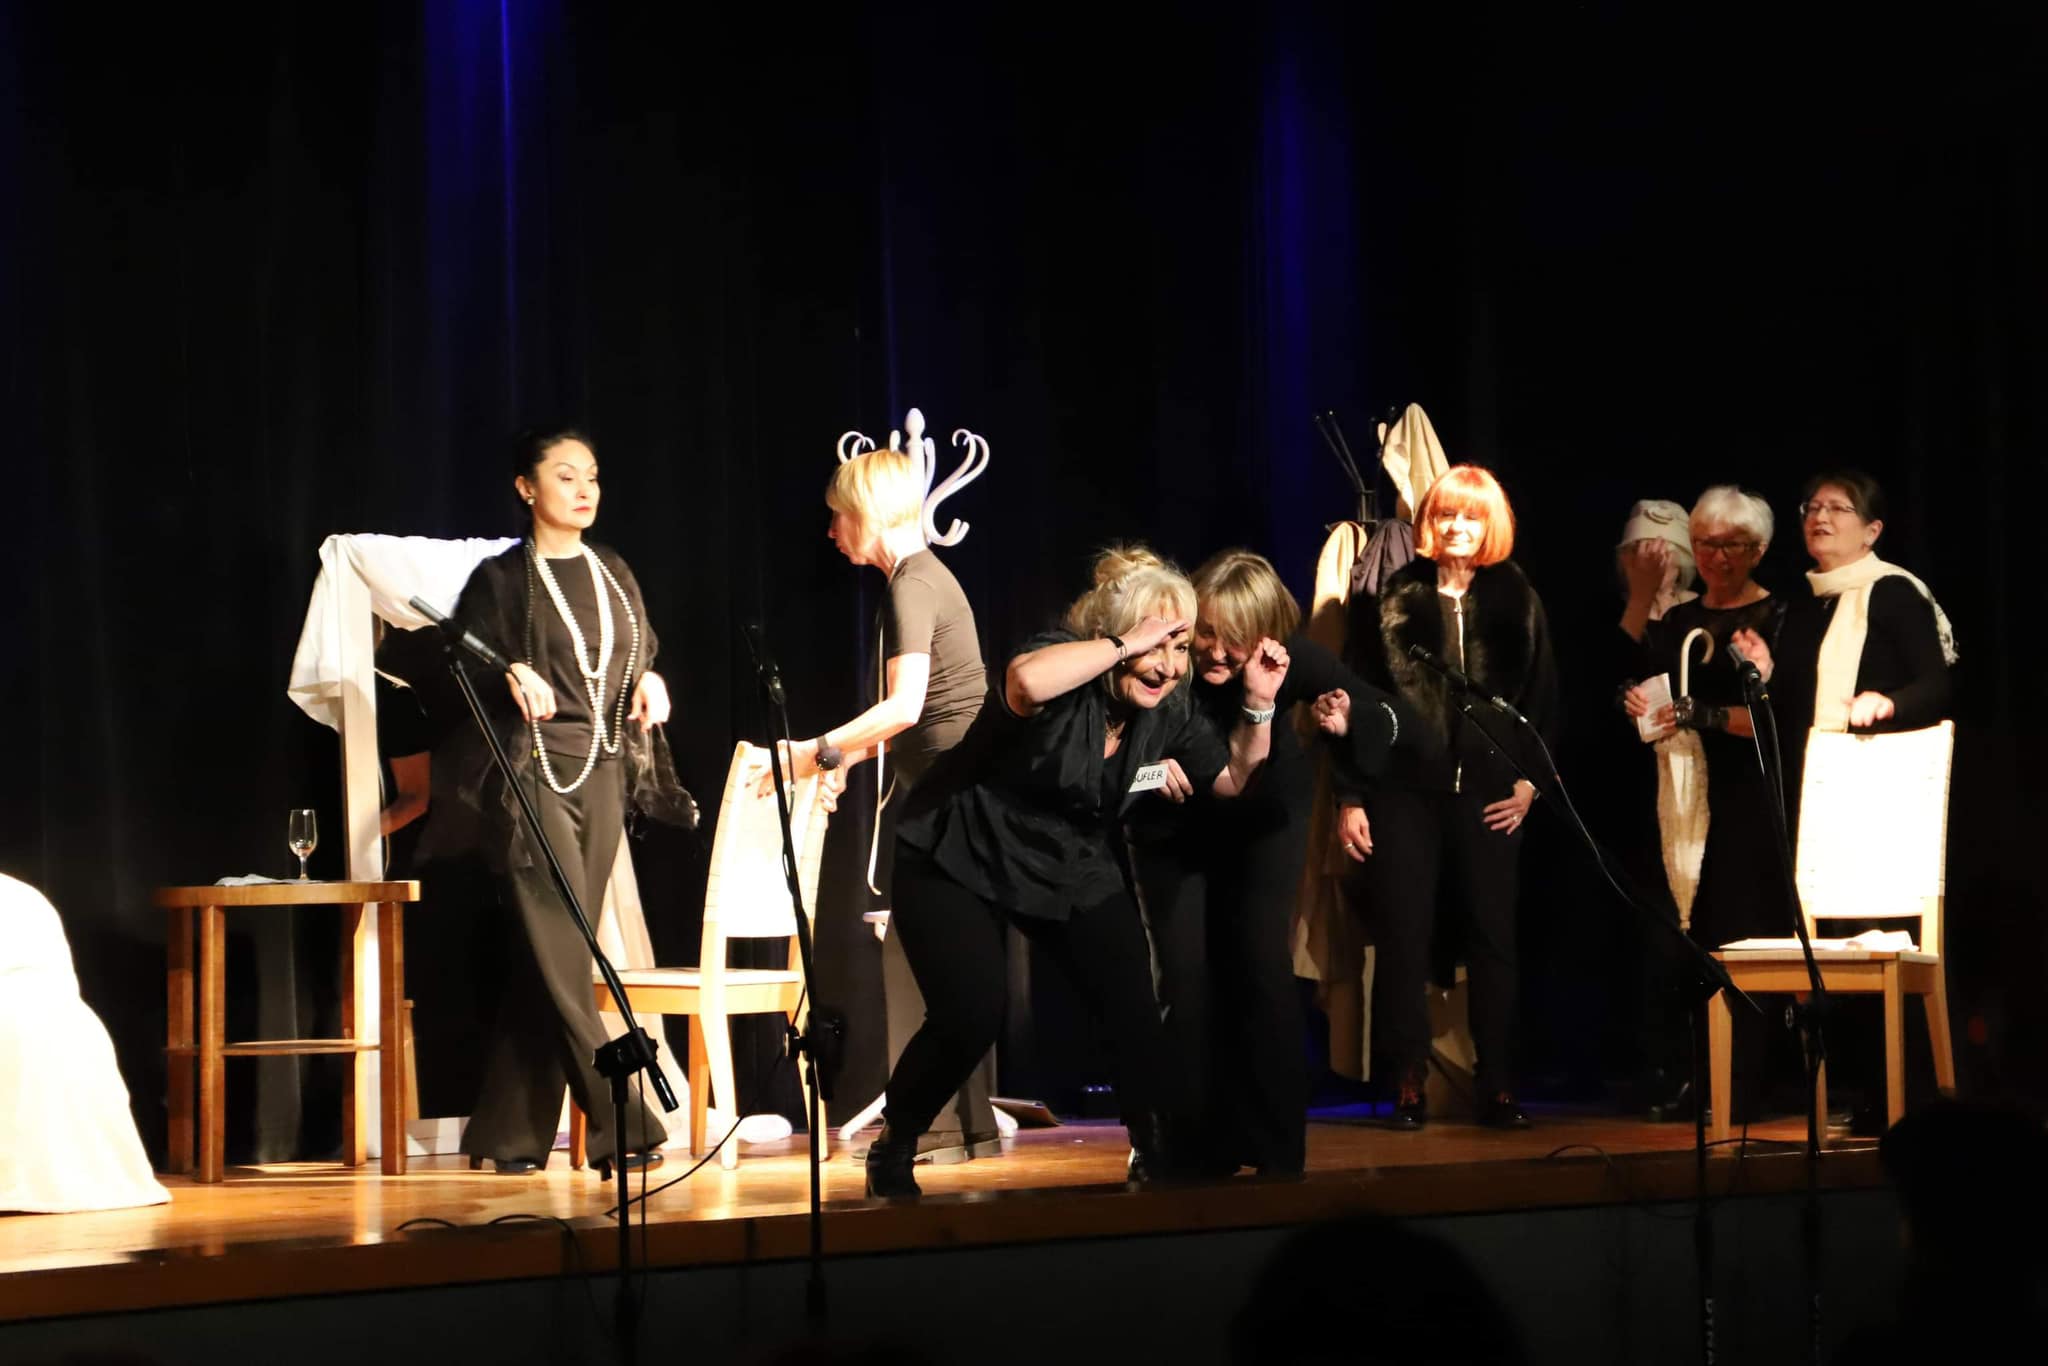 Grupa Teatralna TEGES wystąpiła podczas fesTTeatr - Festiwalu Teatralnym, który odbył się w dniach 17-18 listopada w sąsiedniej gminie Mosina. 